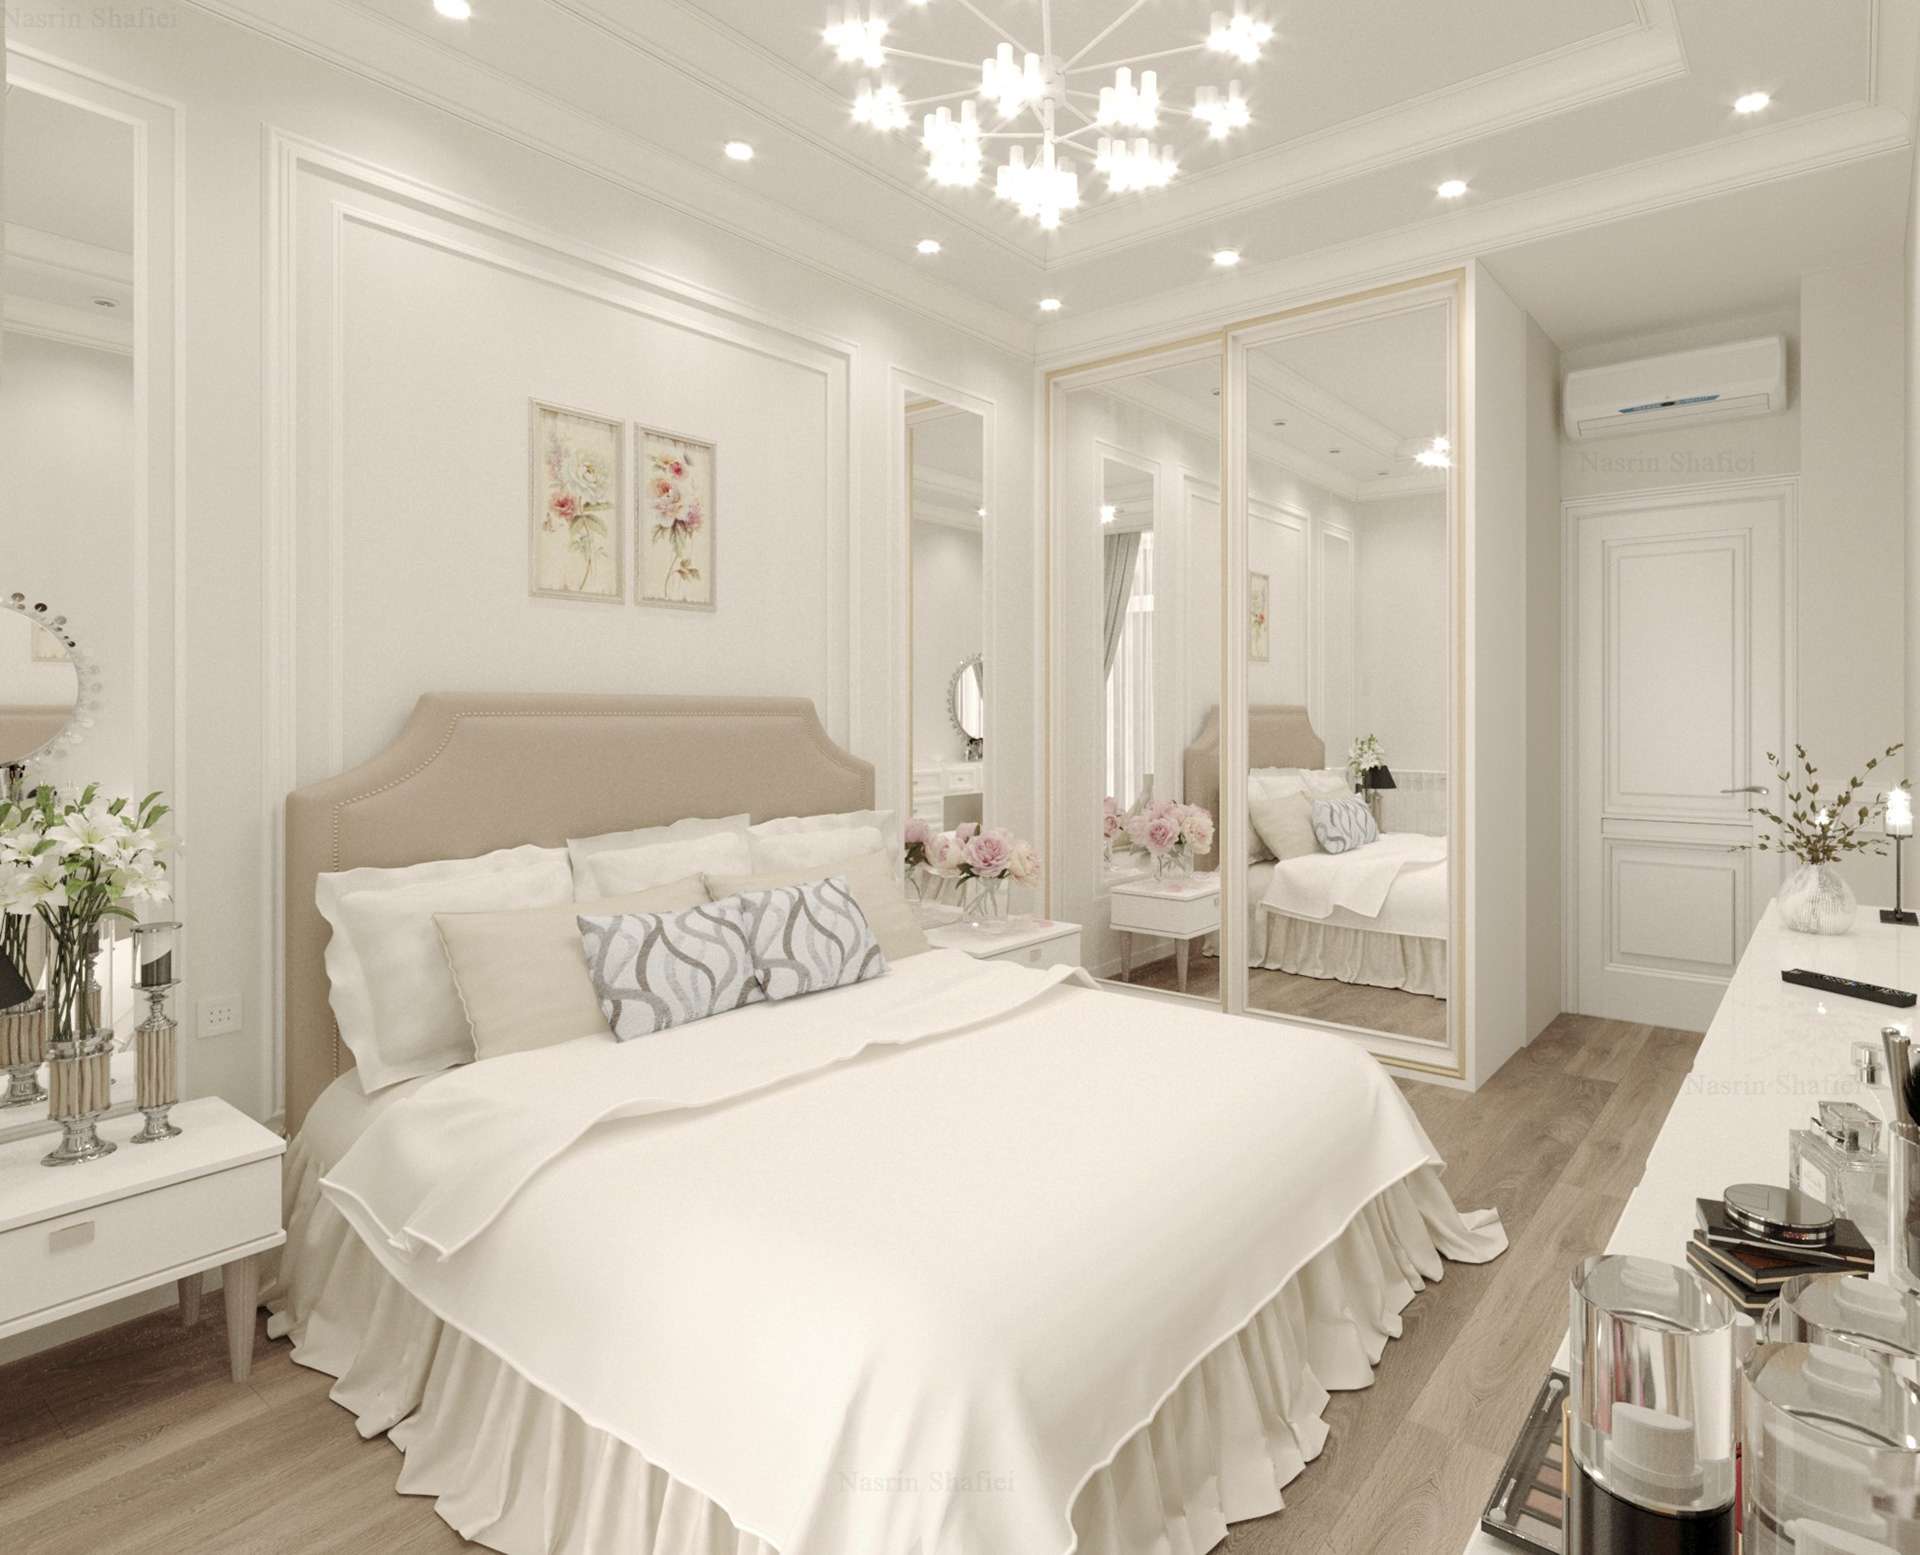 Màu trắng đặc trưng cho phong cách hiện đại và được ứng dụng cho phòng ngủ thêm thanh lịch